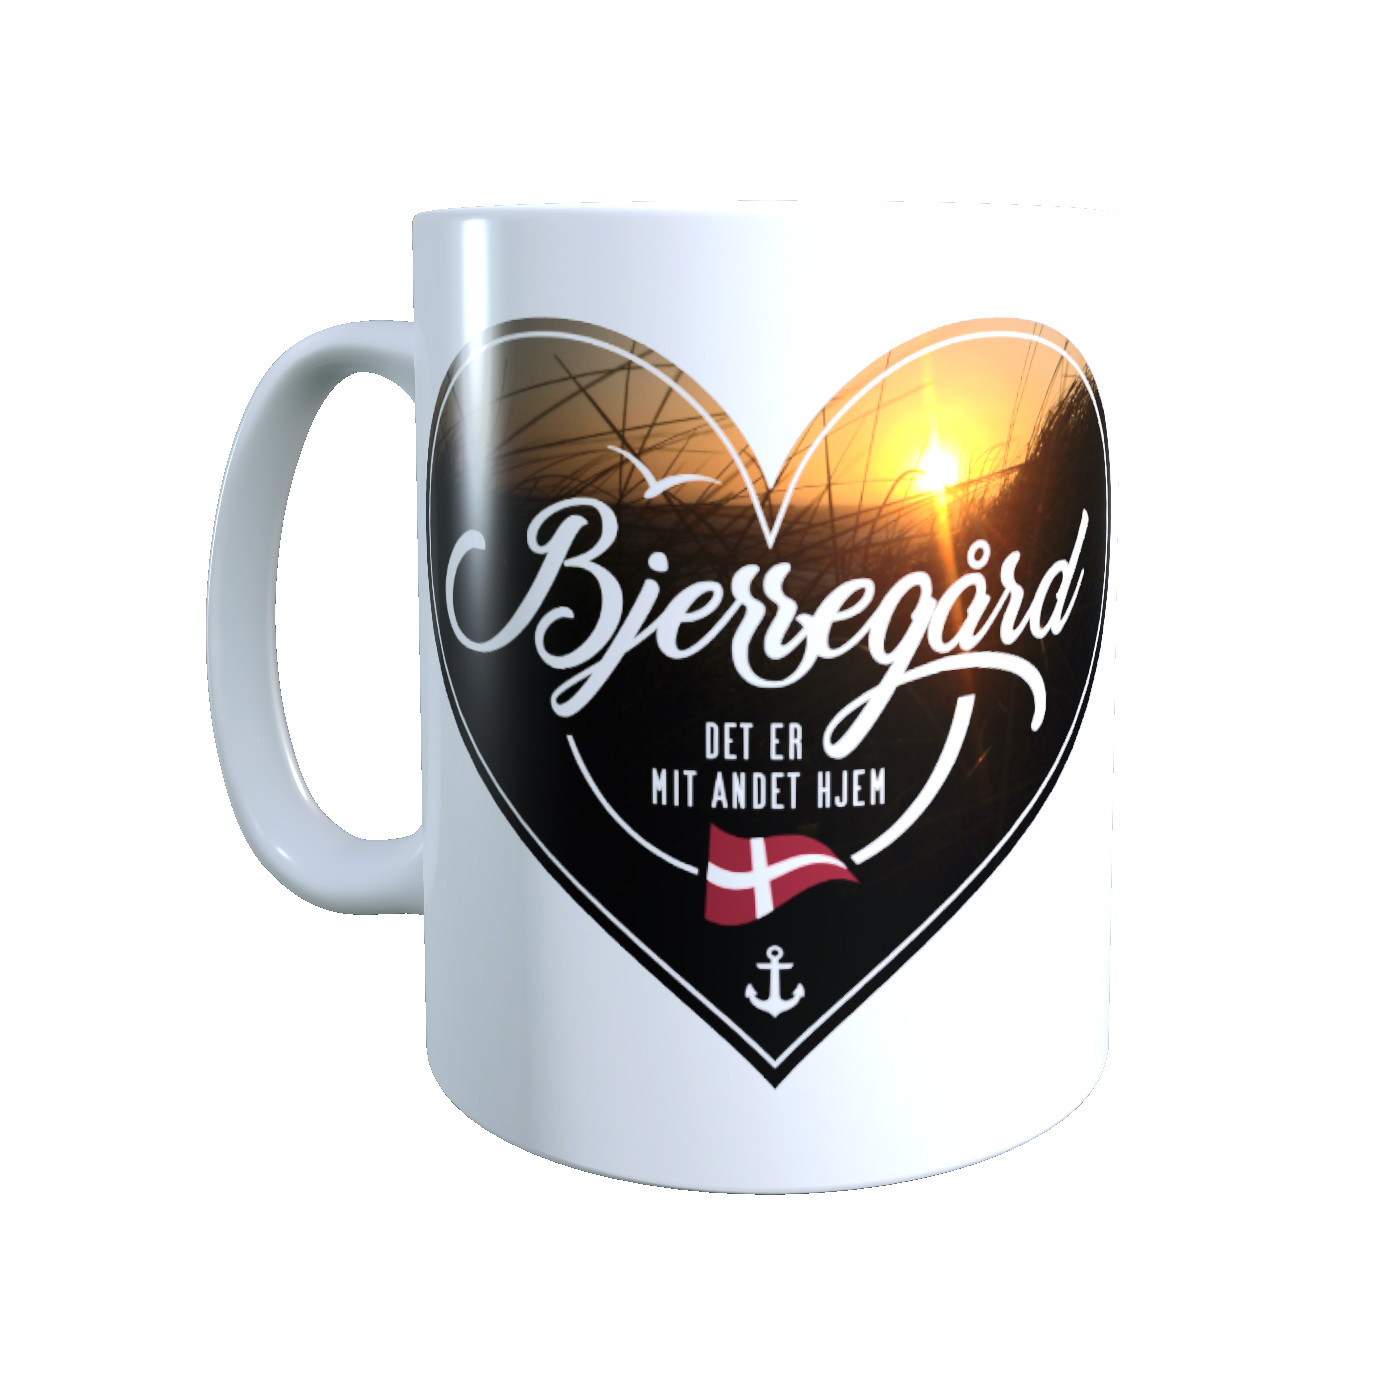 Dänemark - Meine zweite Heimat - Tasse "Bjerregård" Herzmotiv